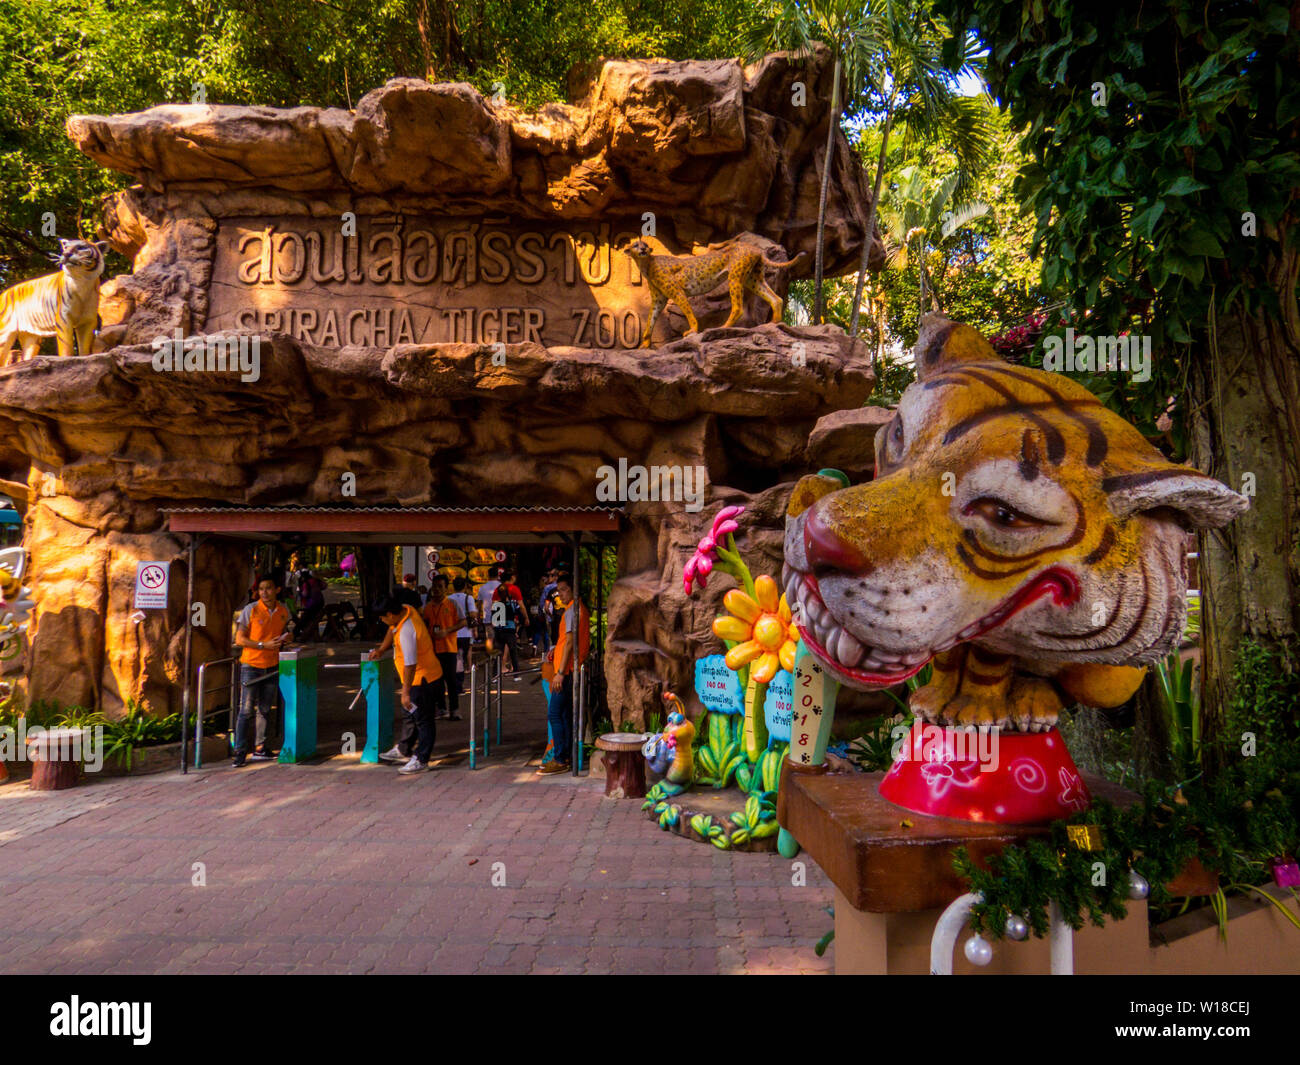 Vue de l'entrée de la Sriracha Tiger Zoo, Pattaya, Thaïlande Banque D'Images